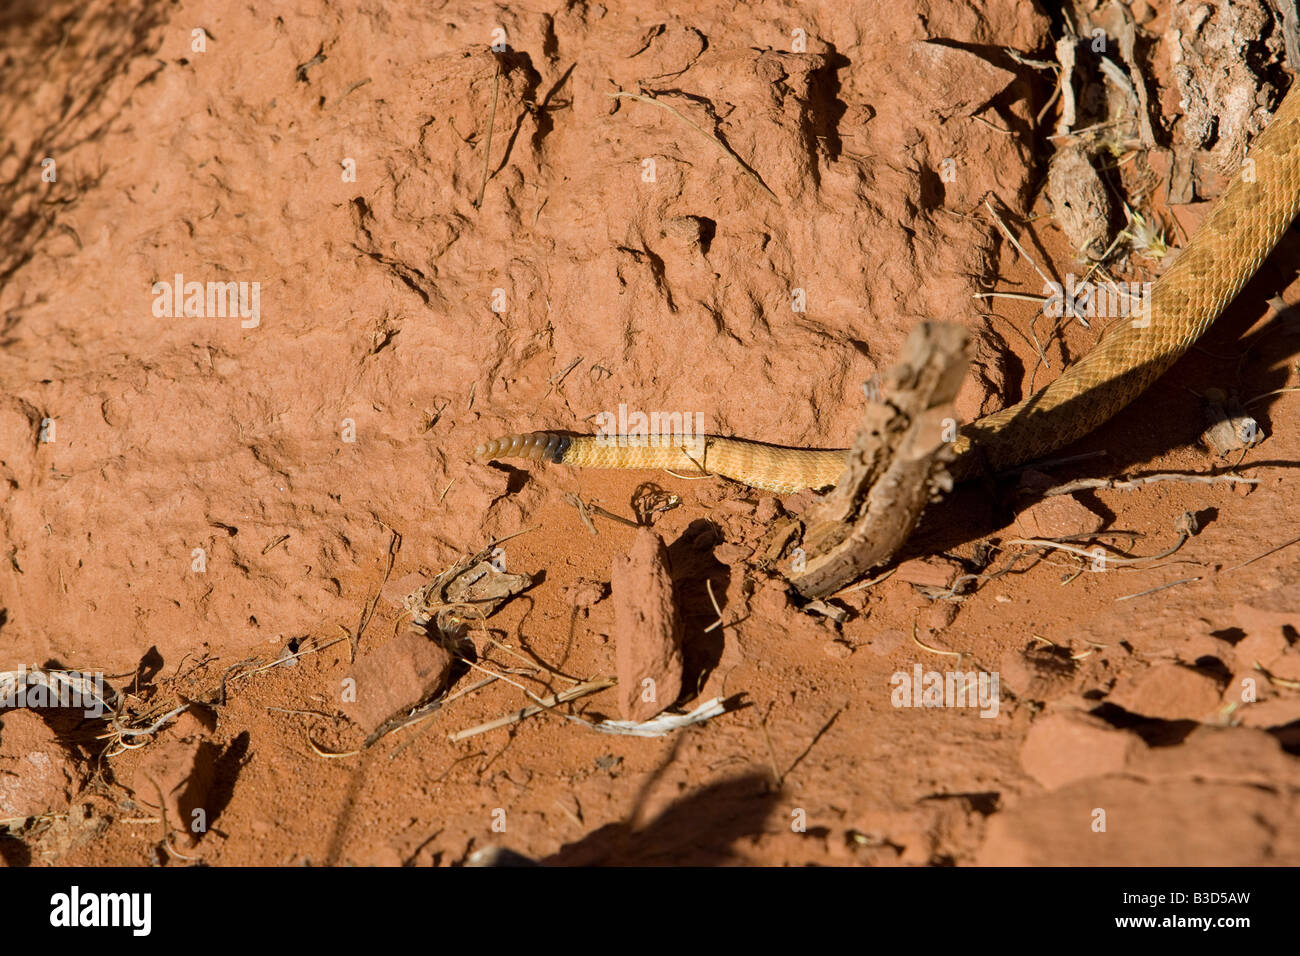 A rattlesnake in the desert Stock Photo